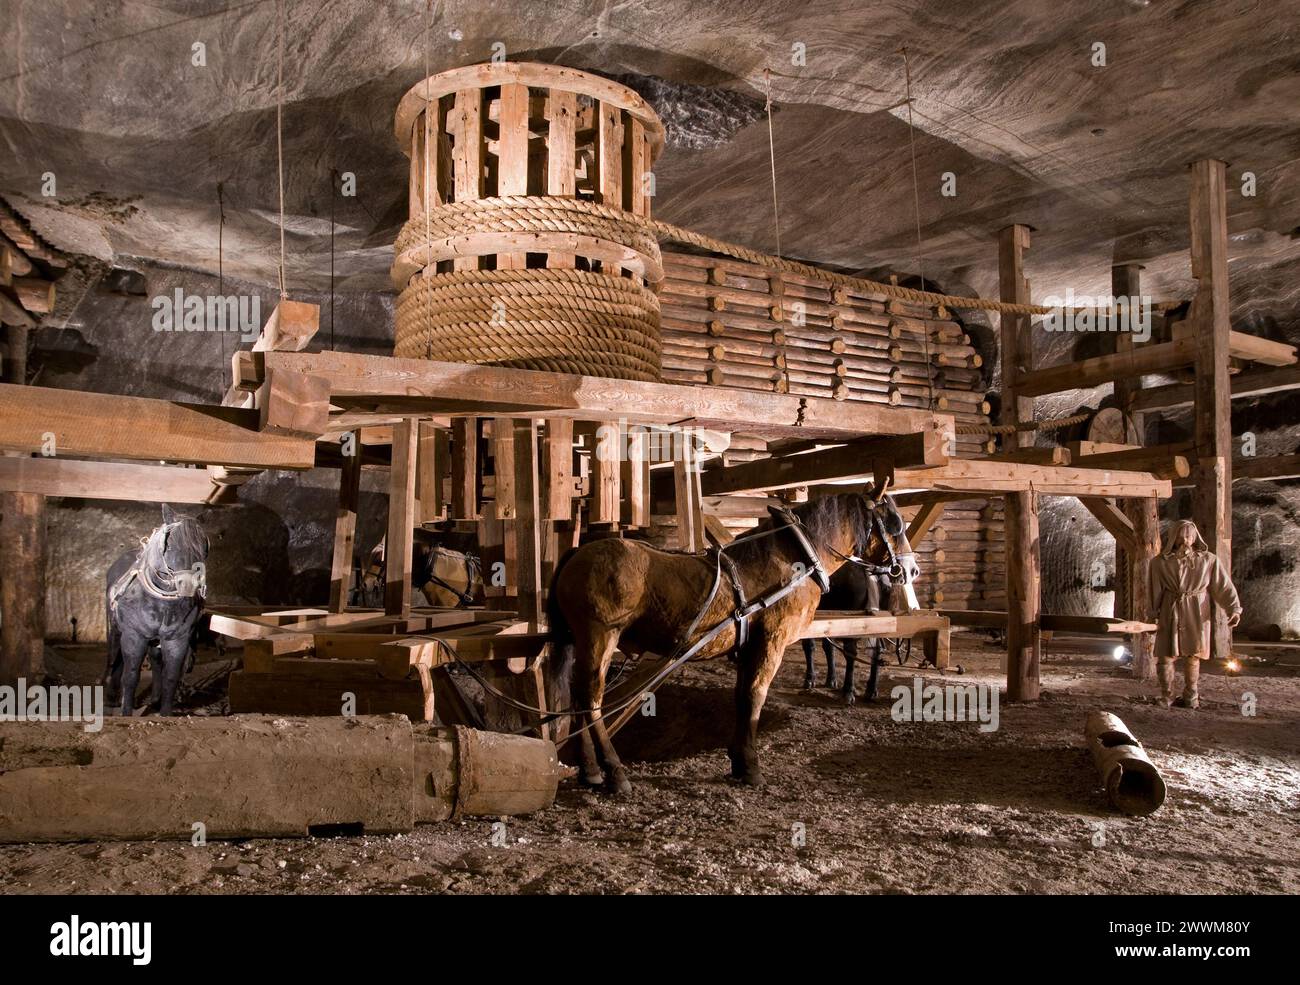 Wieliczka Salt Mine, Wieliczka, Poland Stock Photo